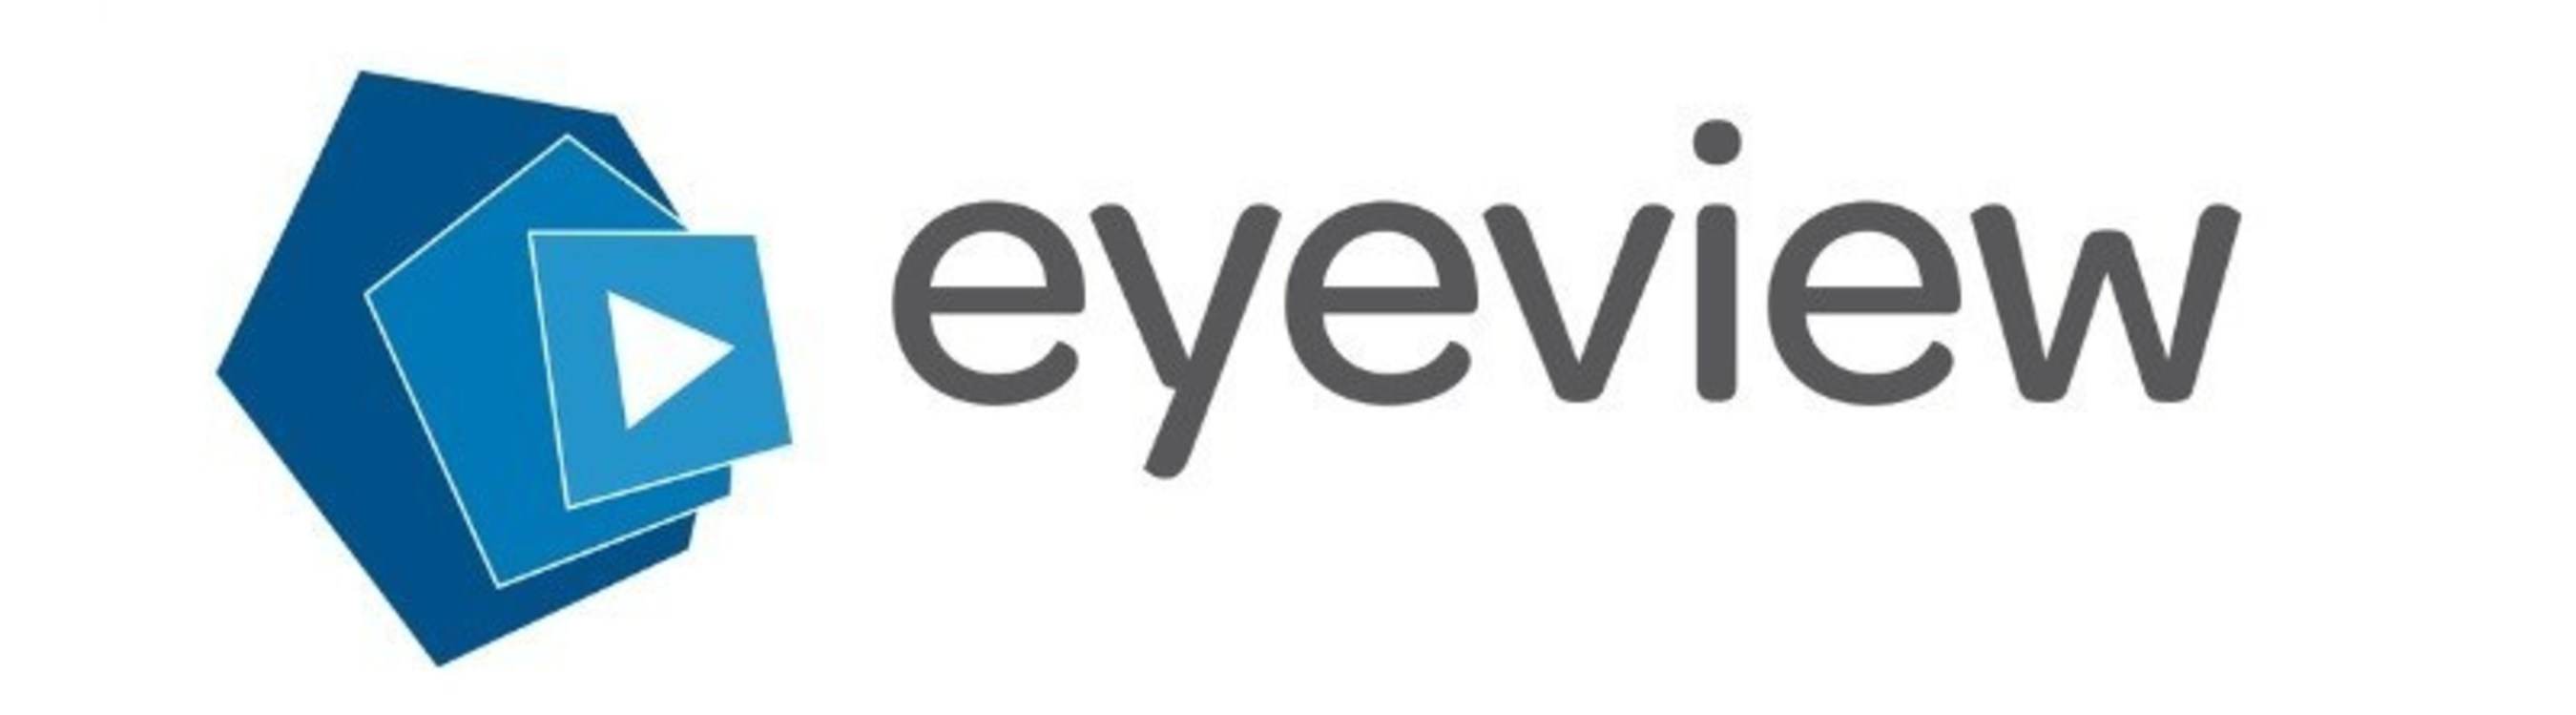 Eyeview Logo